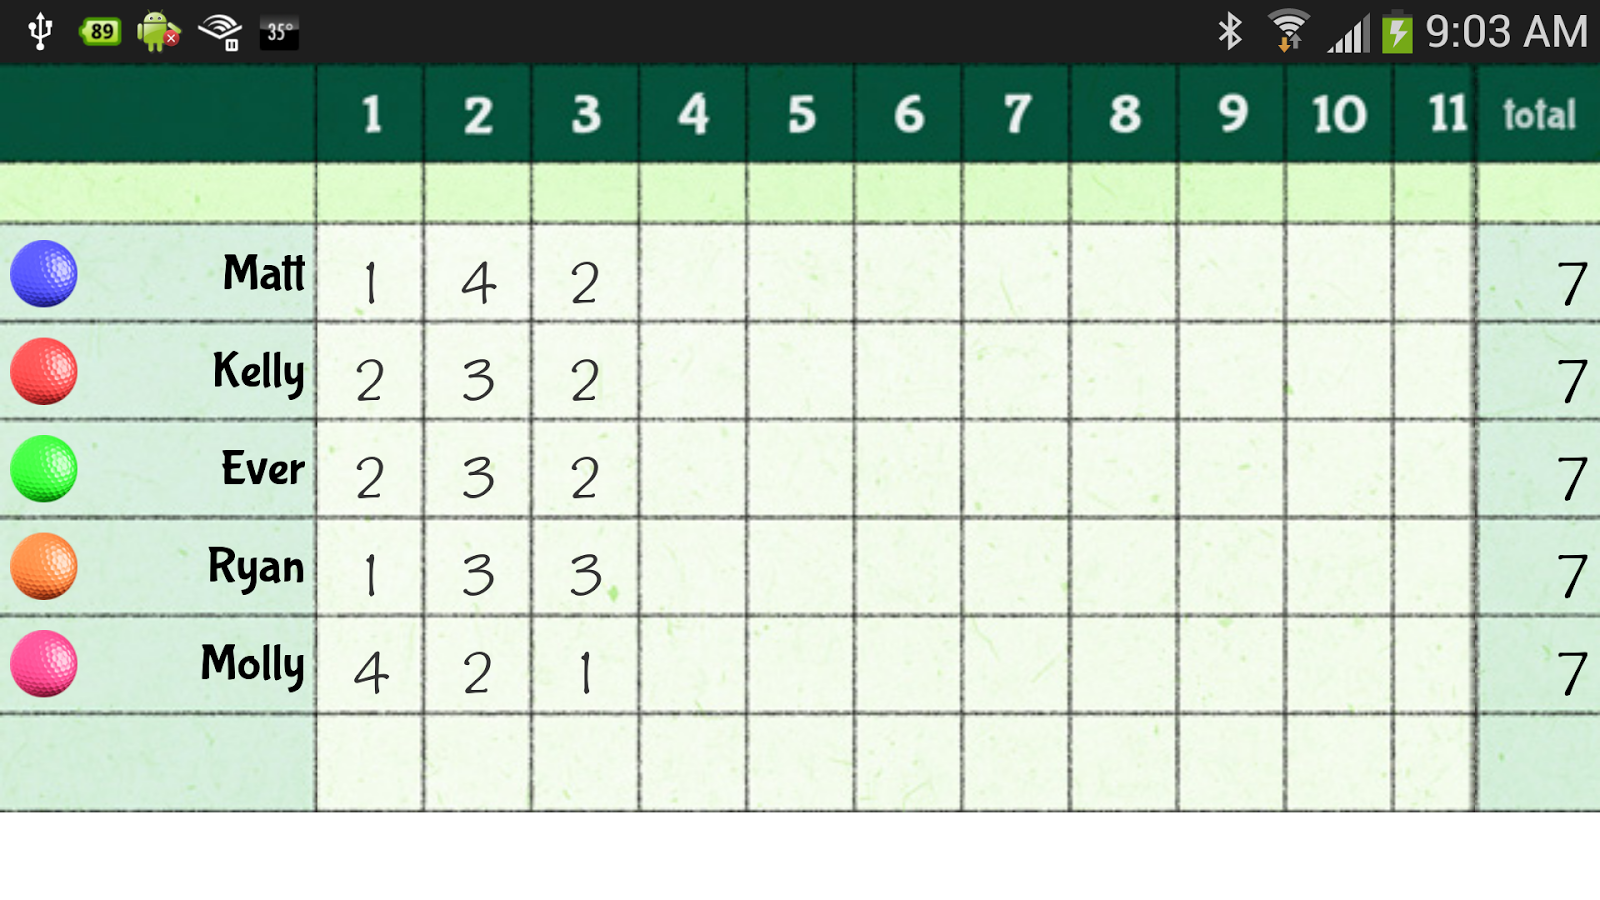 Mini Golf Score Cards Template